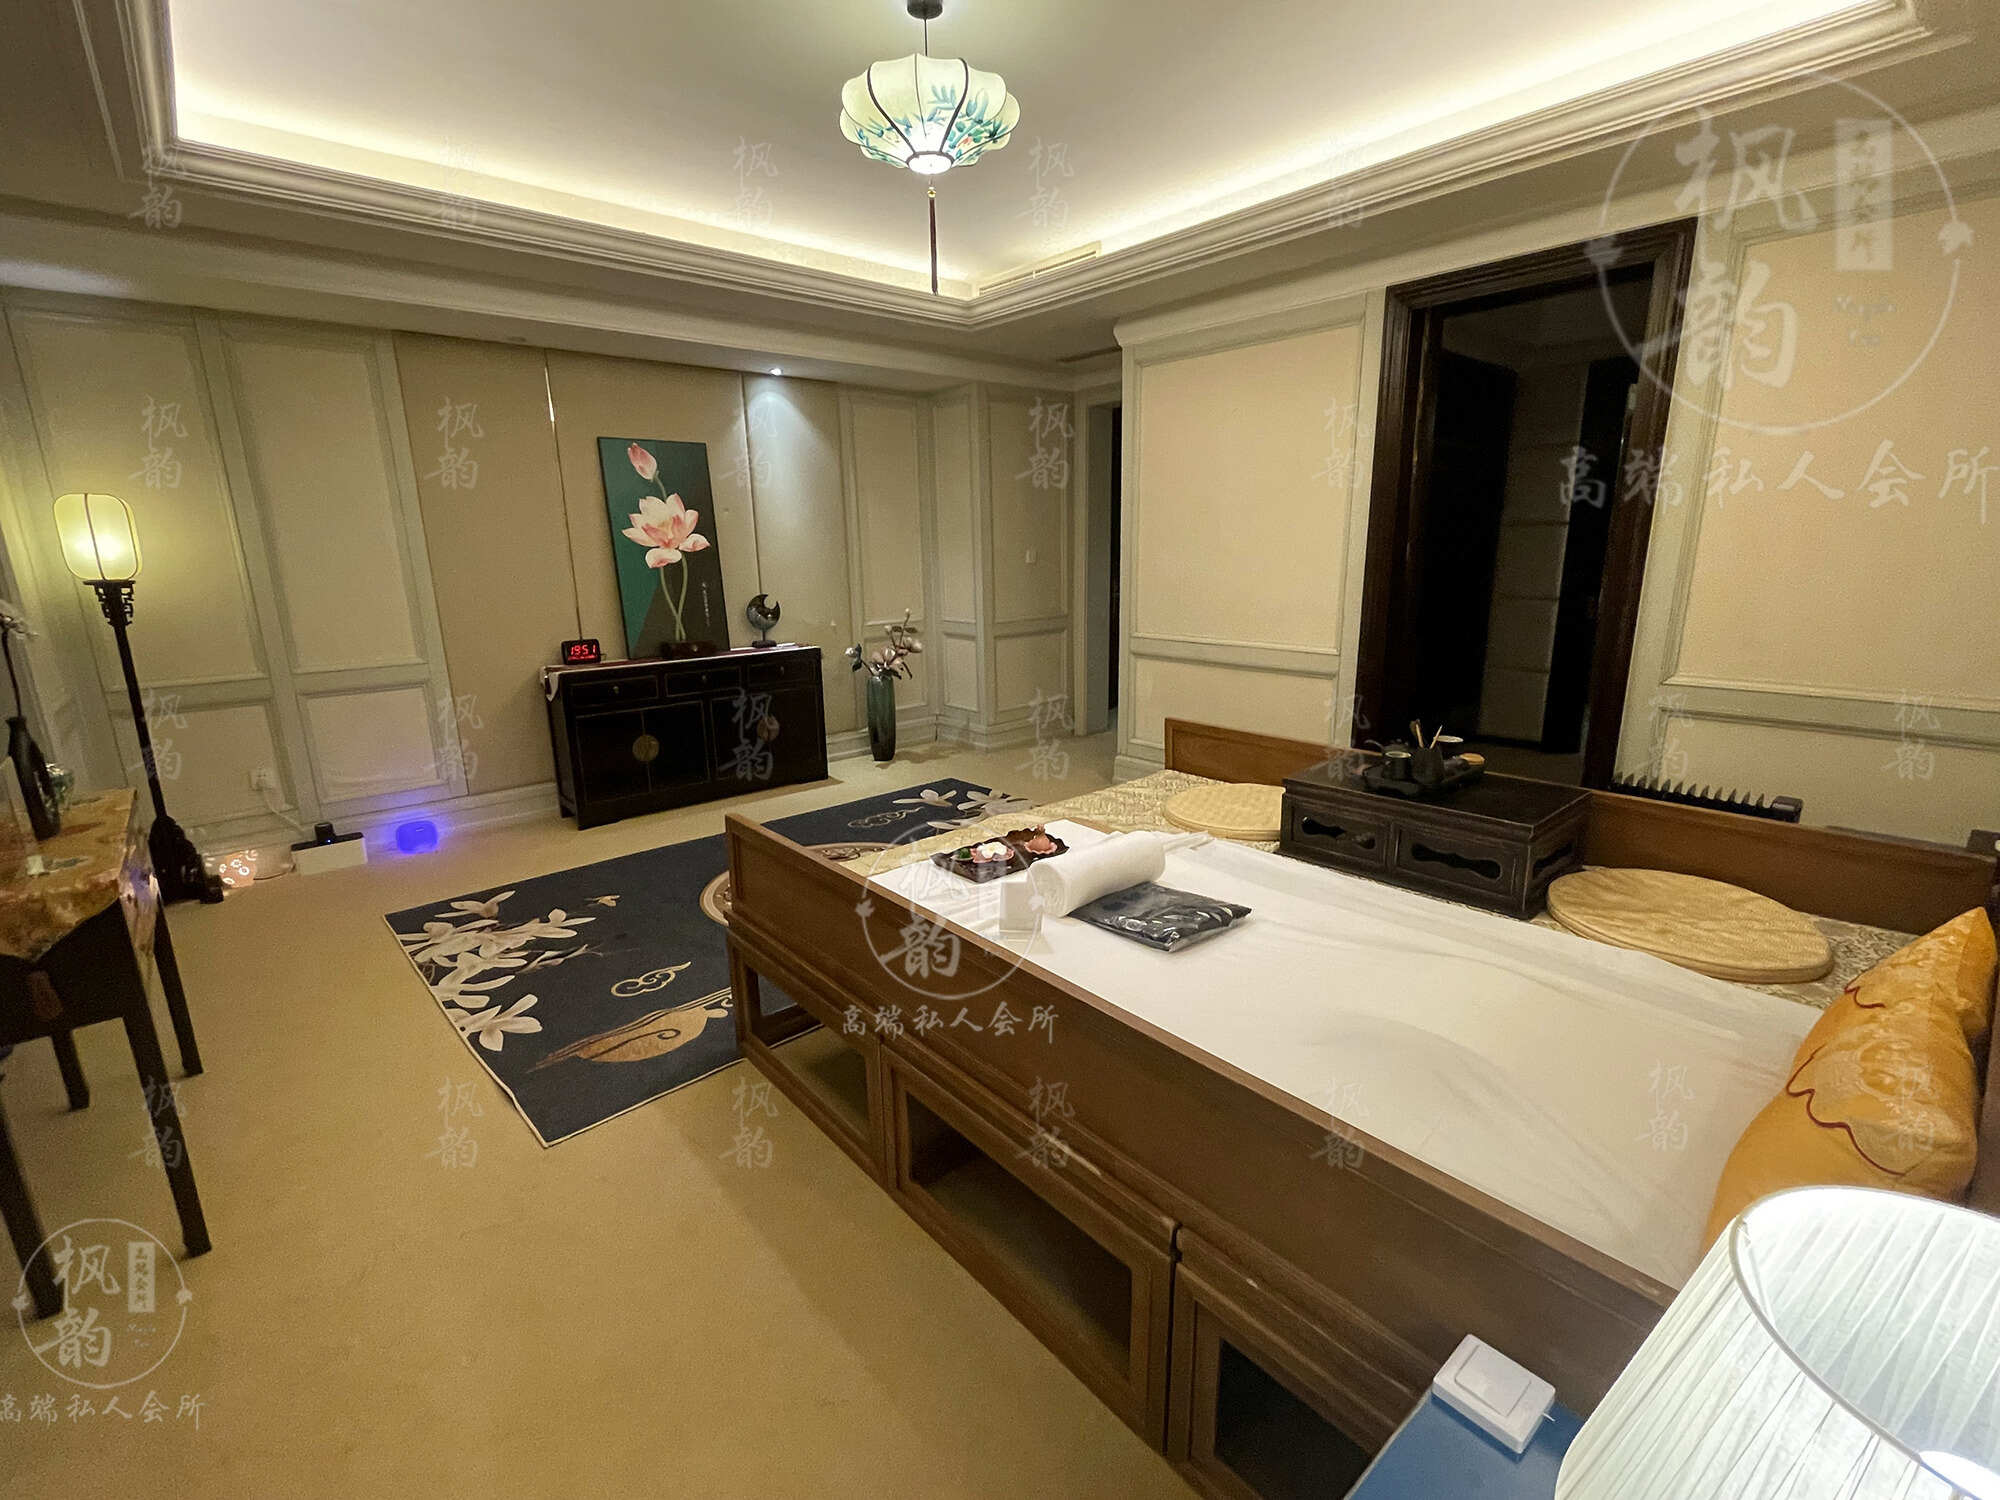 天津天津渔阳鼓楼人气优选沐足会馆房间也很干净，舒适的spa体验